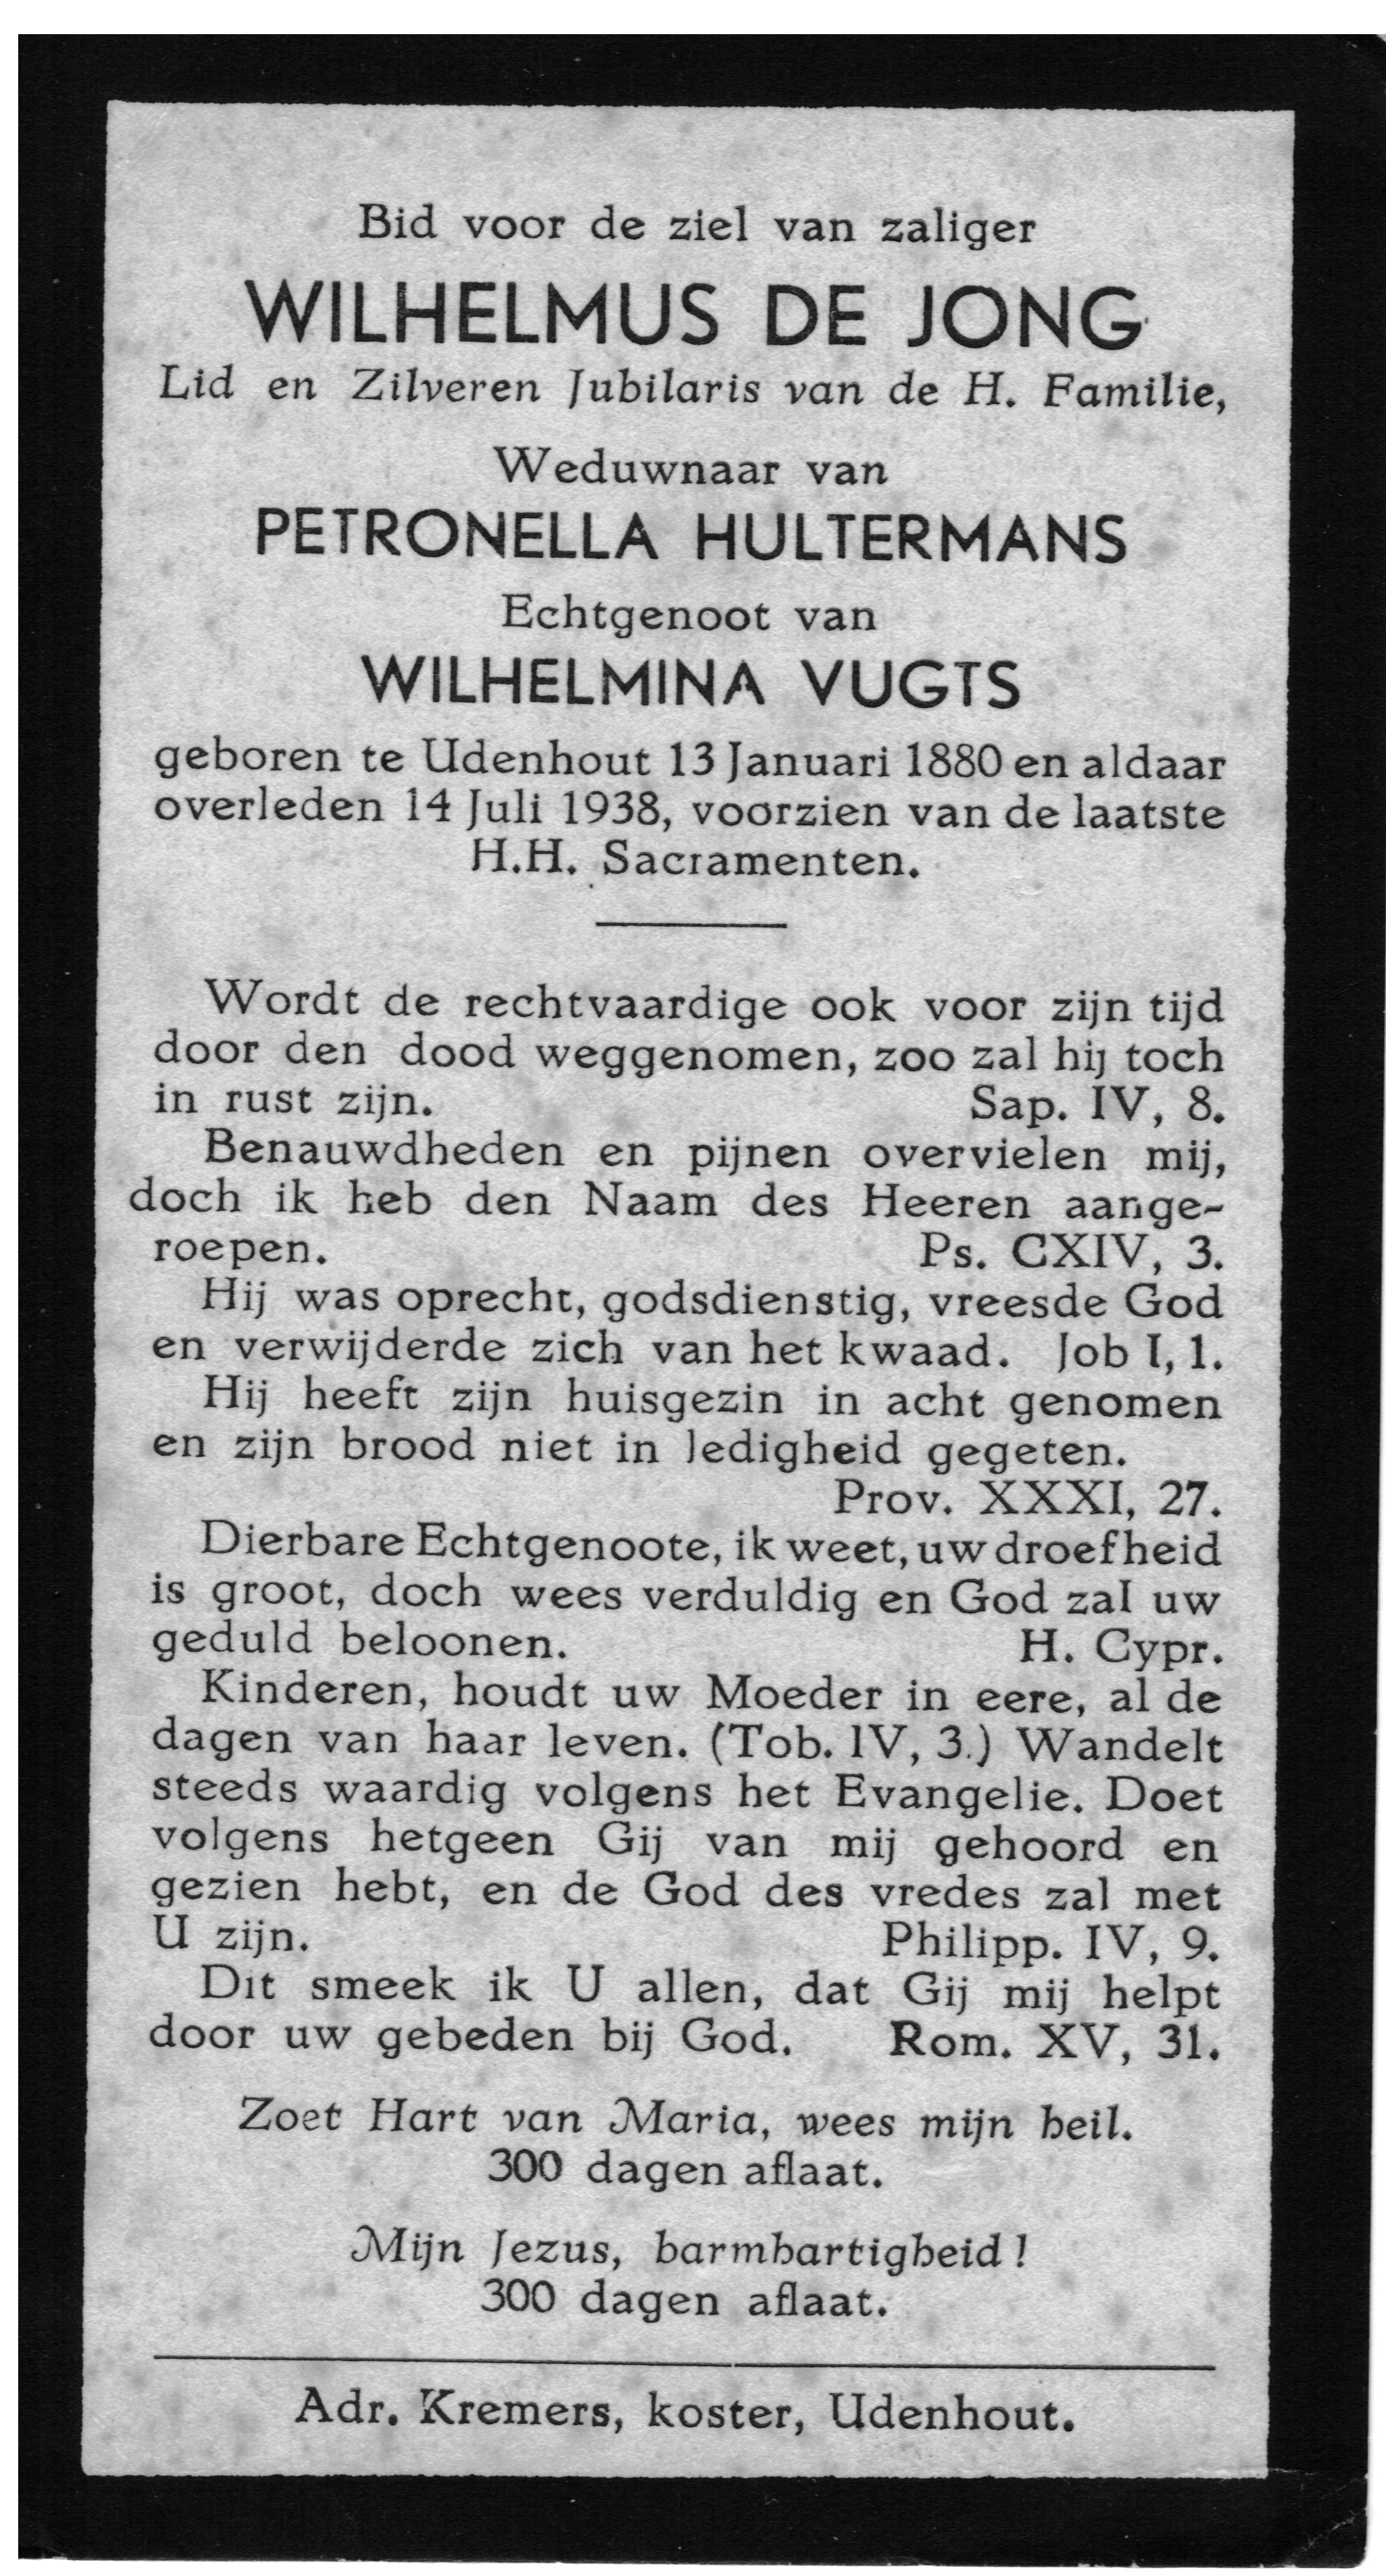 1938-07-14_b_wilhelmus_djong.jpg